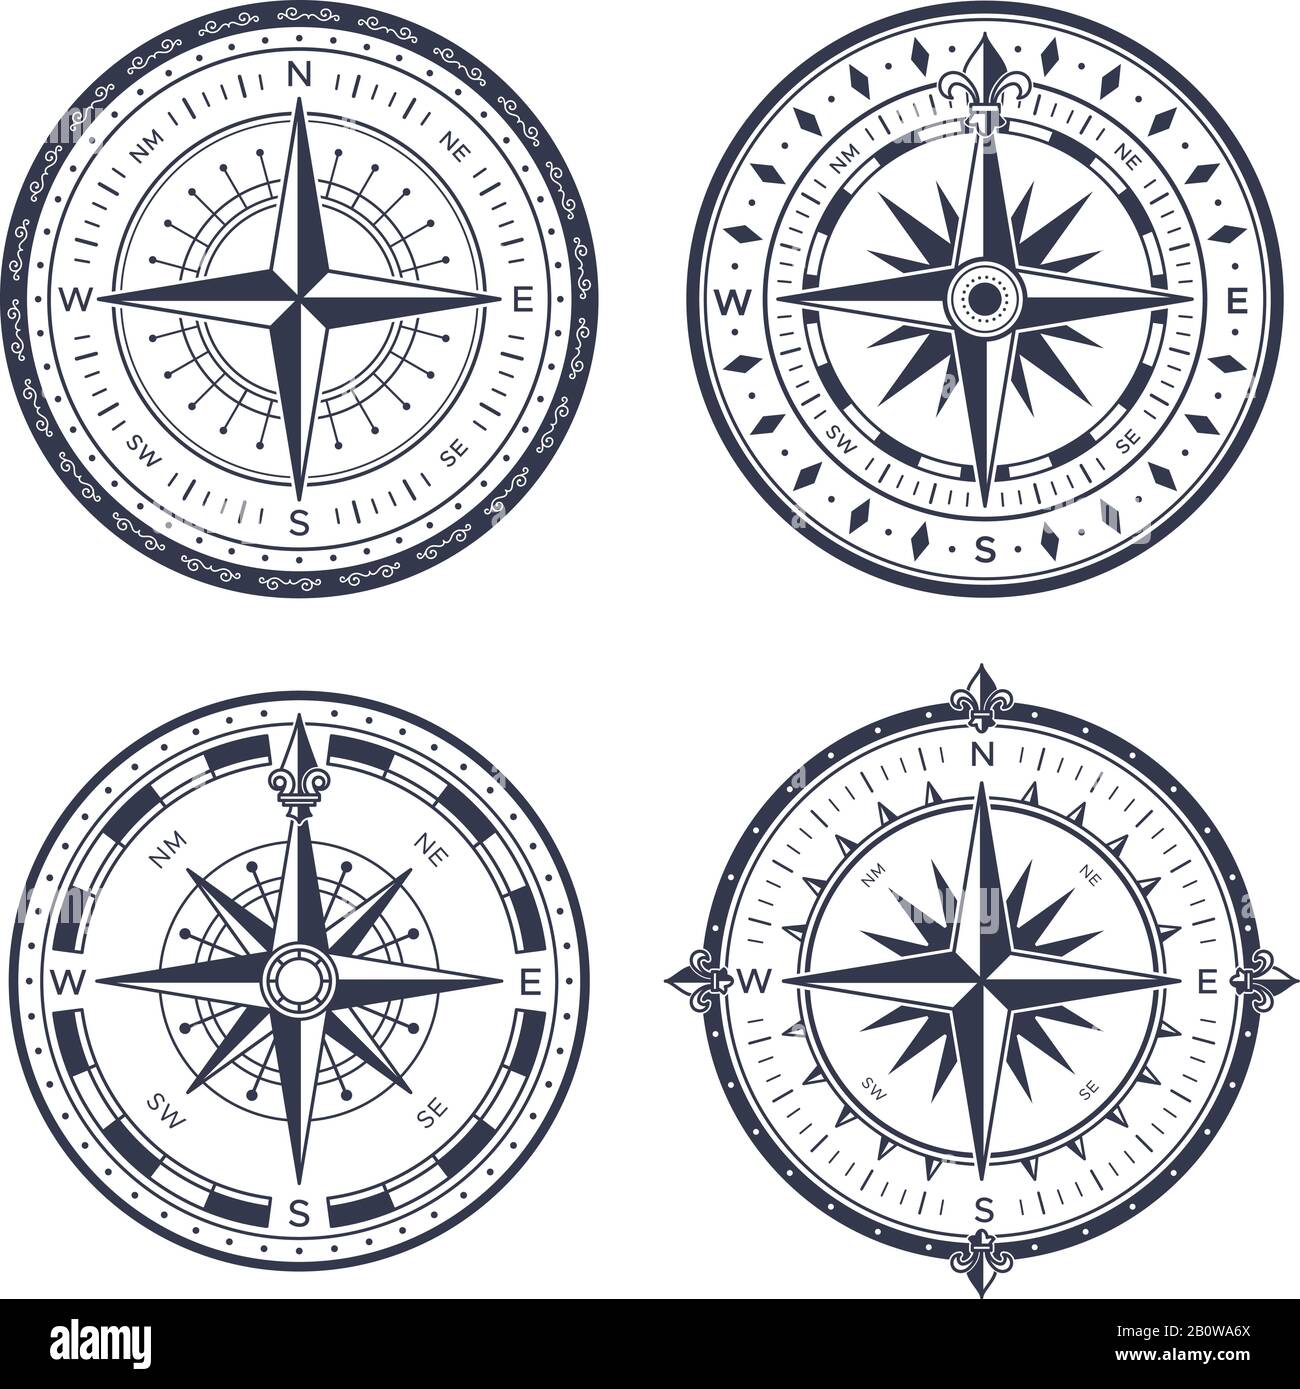 Compas de mer vintage. Flèches rétro est et ouest, nord et sud. Compas de navigation avec jeu vectoriel isolé à la rose du vent Illustration de Vecteur